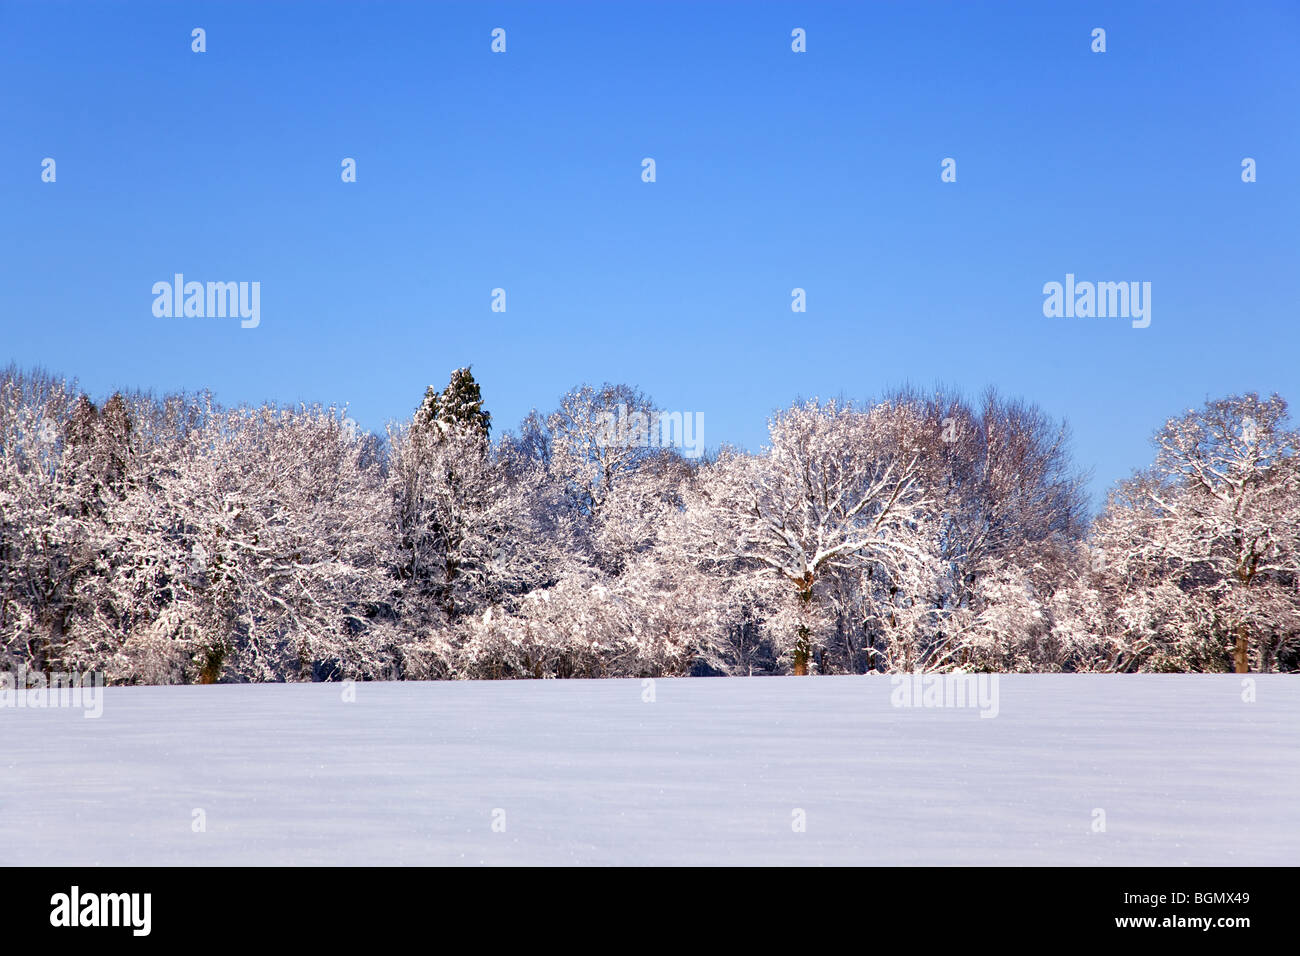 Photo de paysage d'un champ et arbres couvert de neige fraîche avec un ciel bleu clair. Banque D'Images